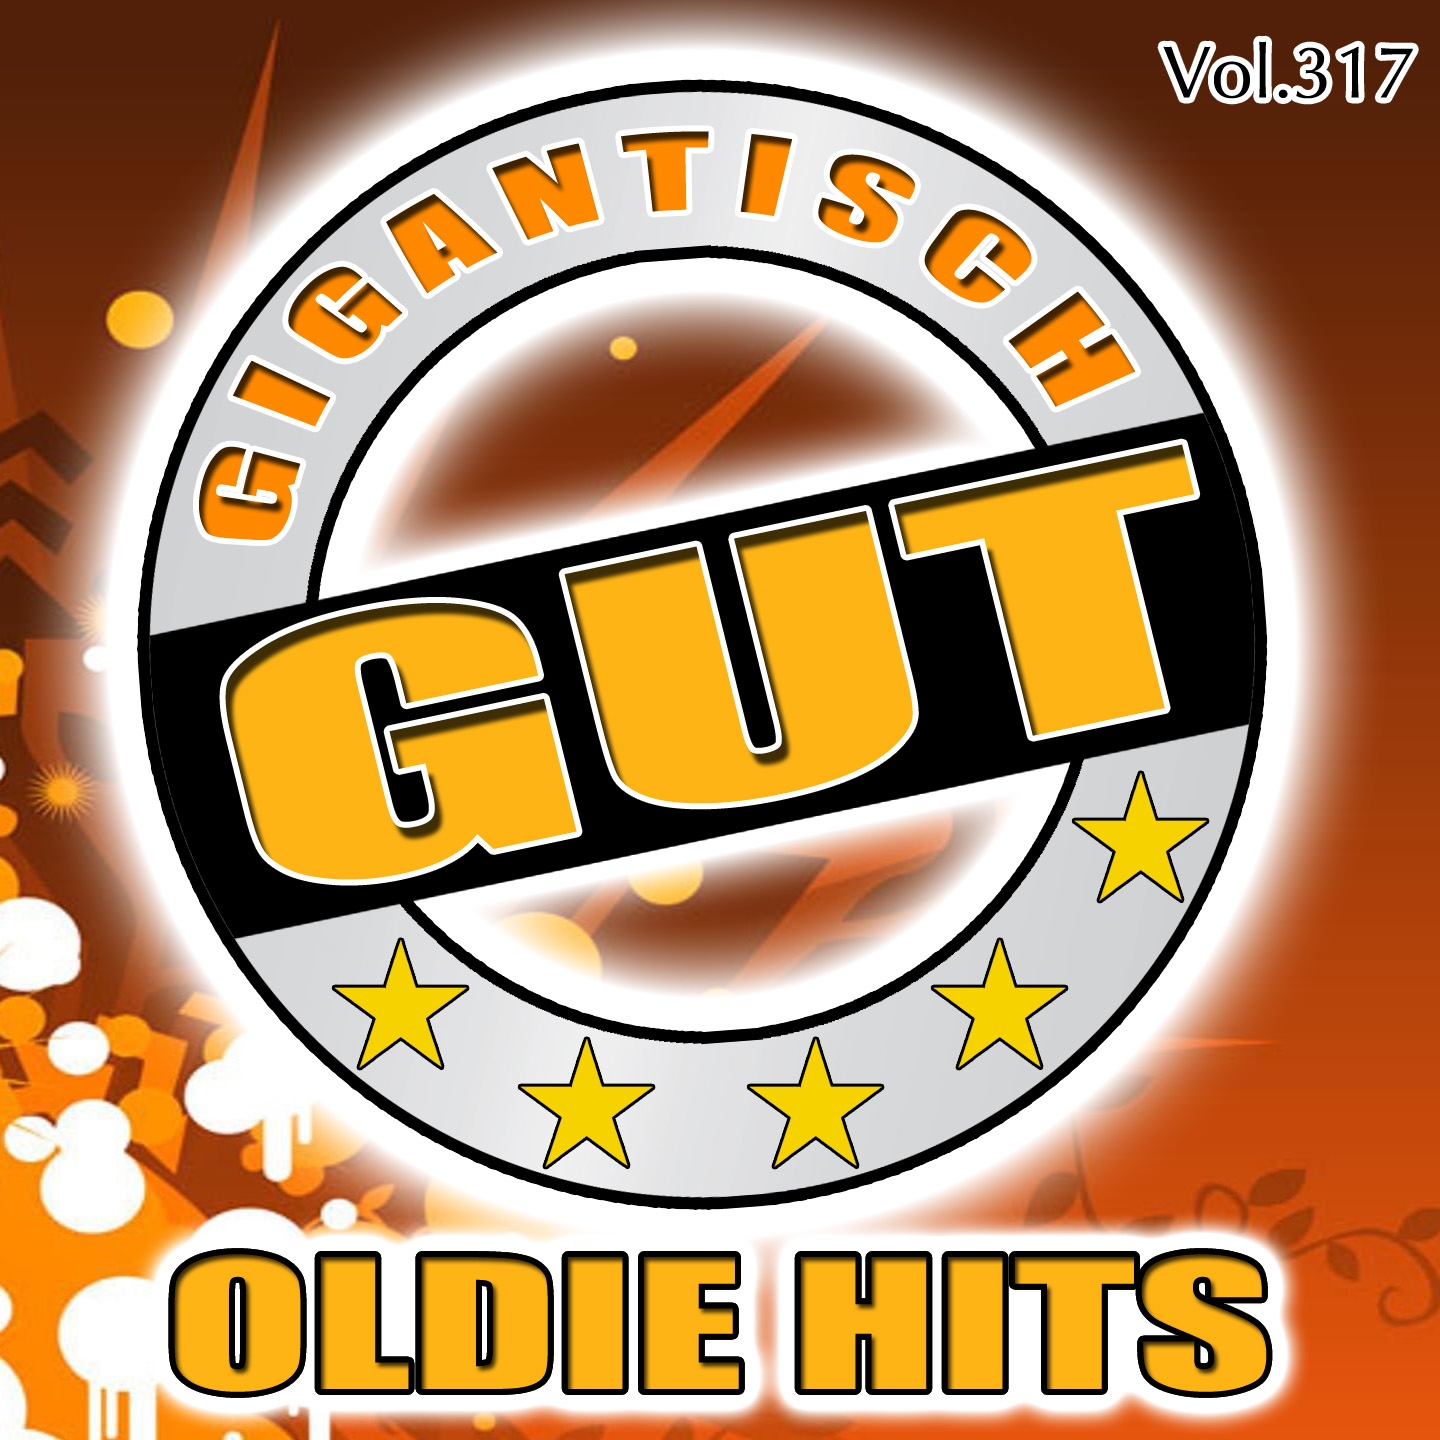 Gigantisch Gut: Oldie Hits, Vol. 317